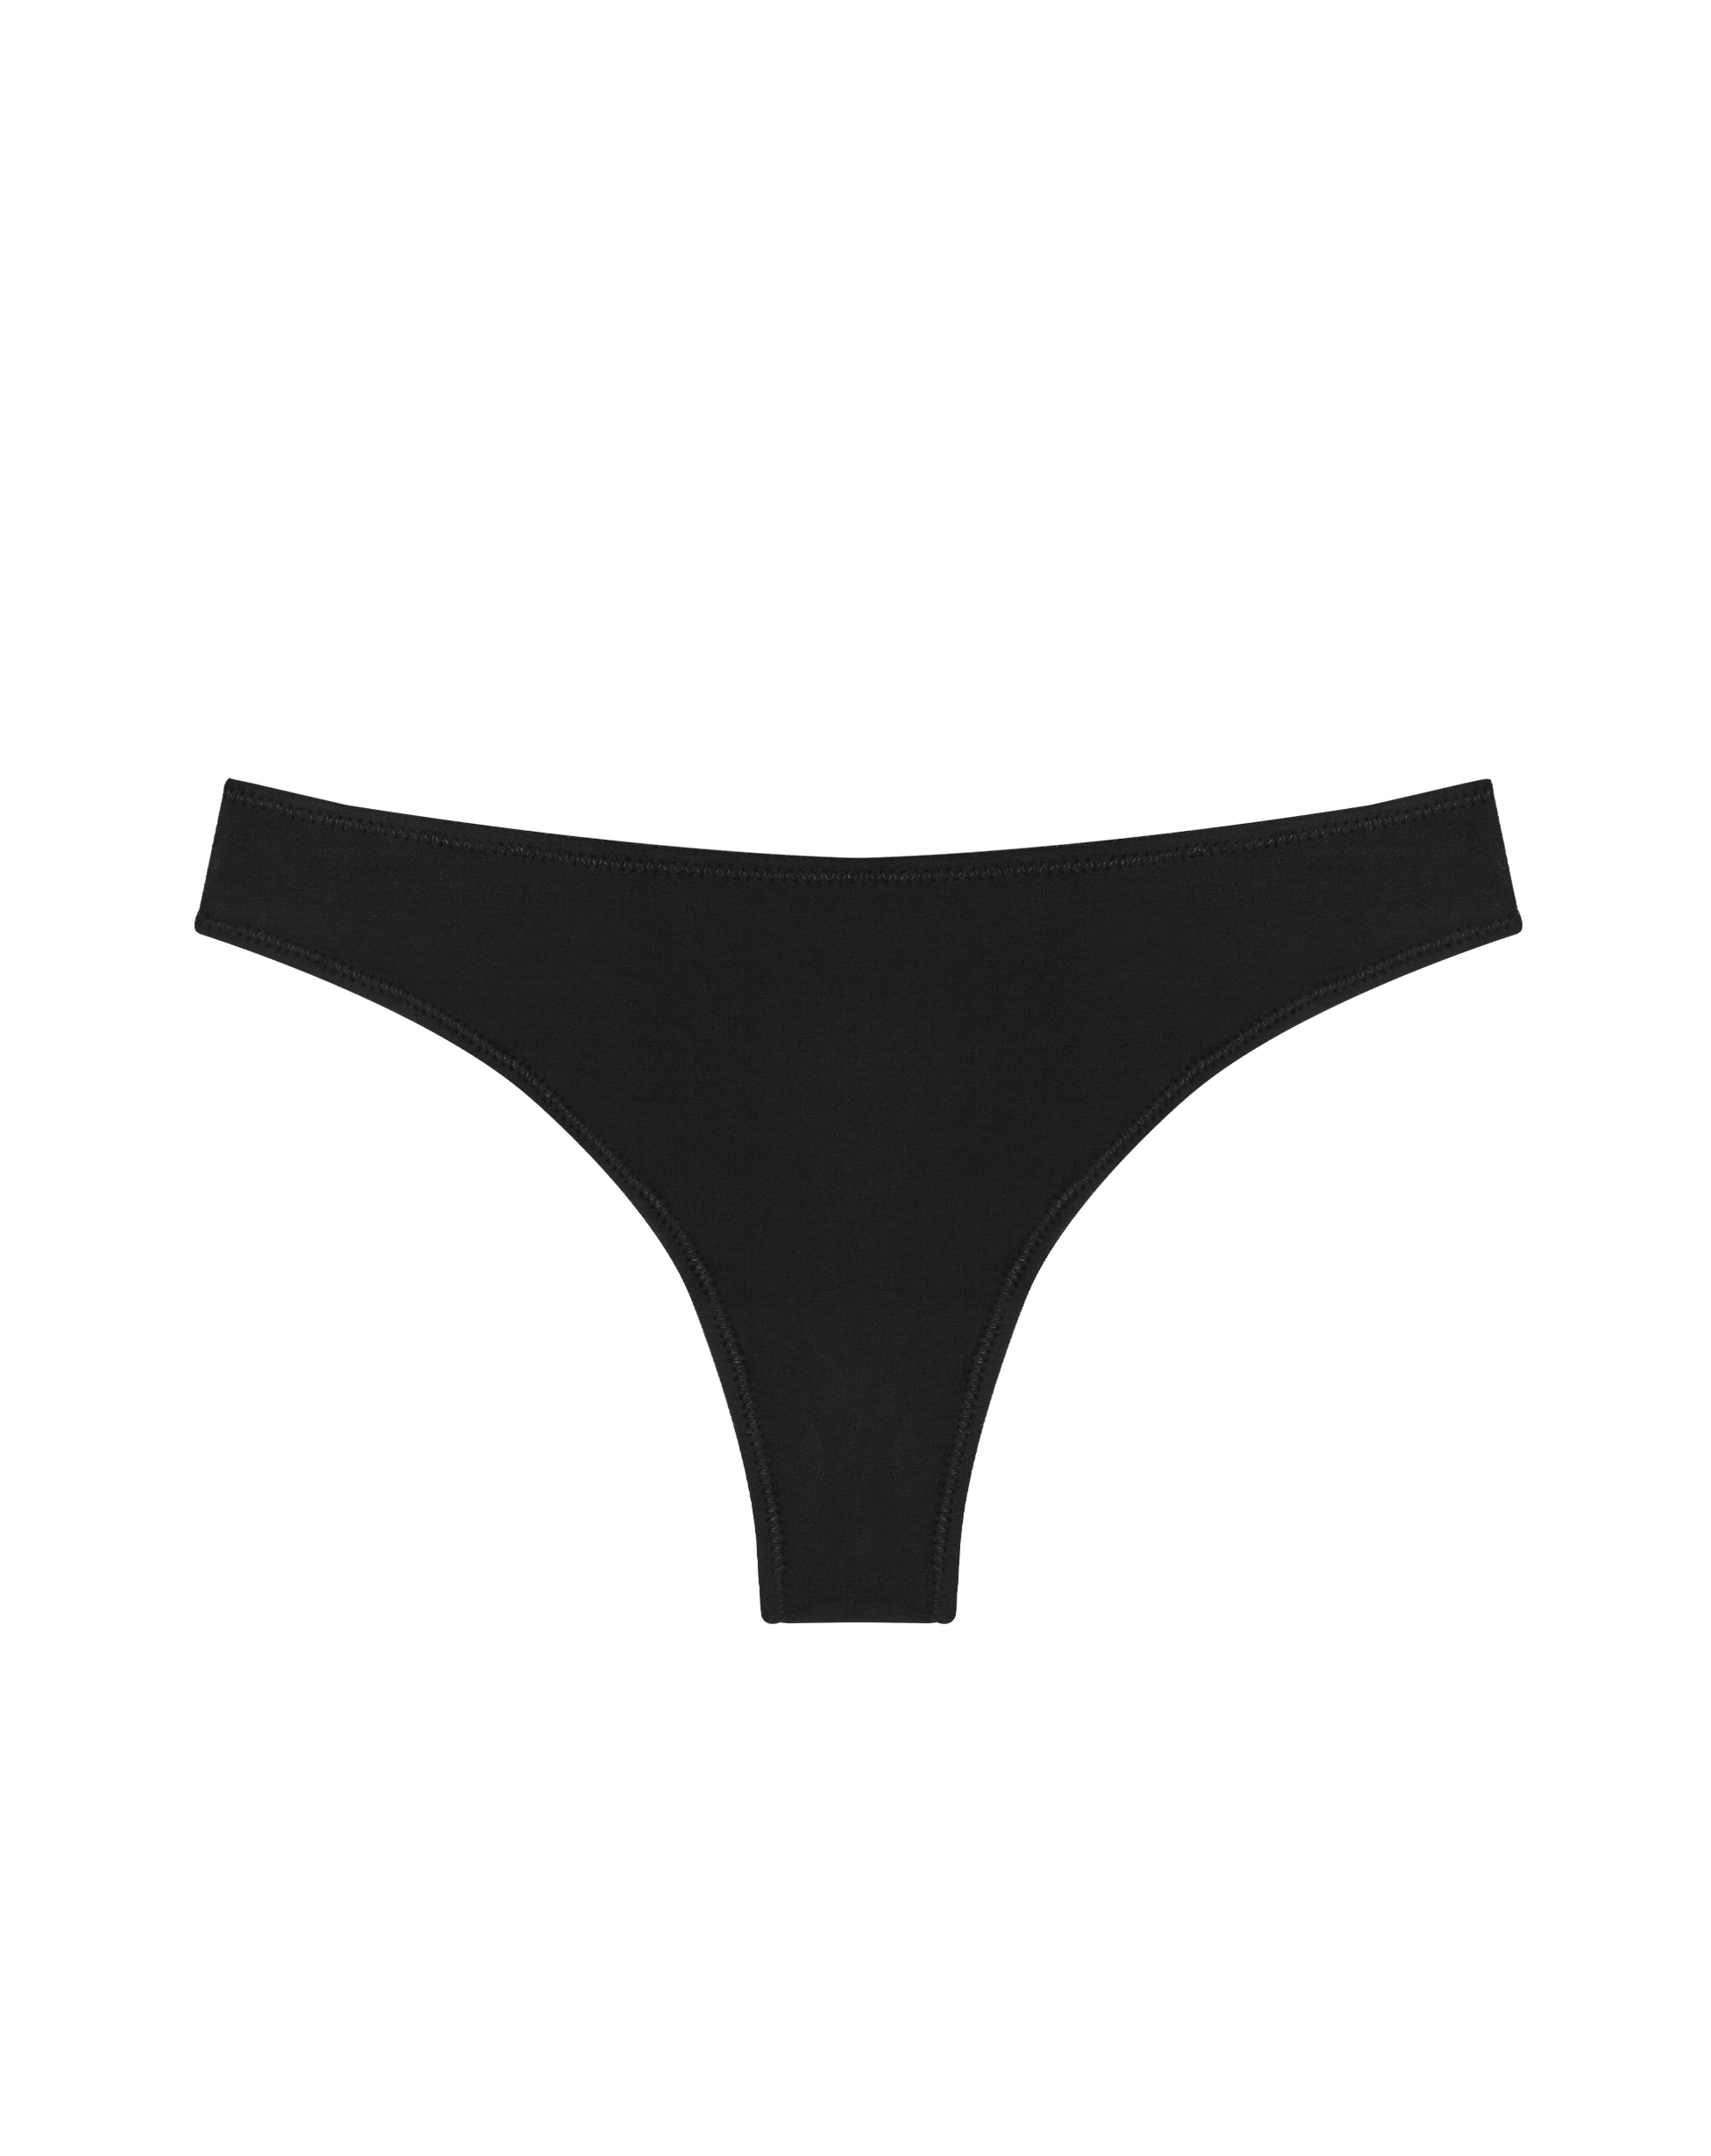 Hunpta Underwear Women Solid Underwear V String Thong Panty Lingerie 